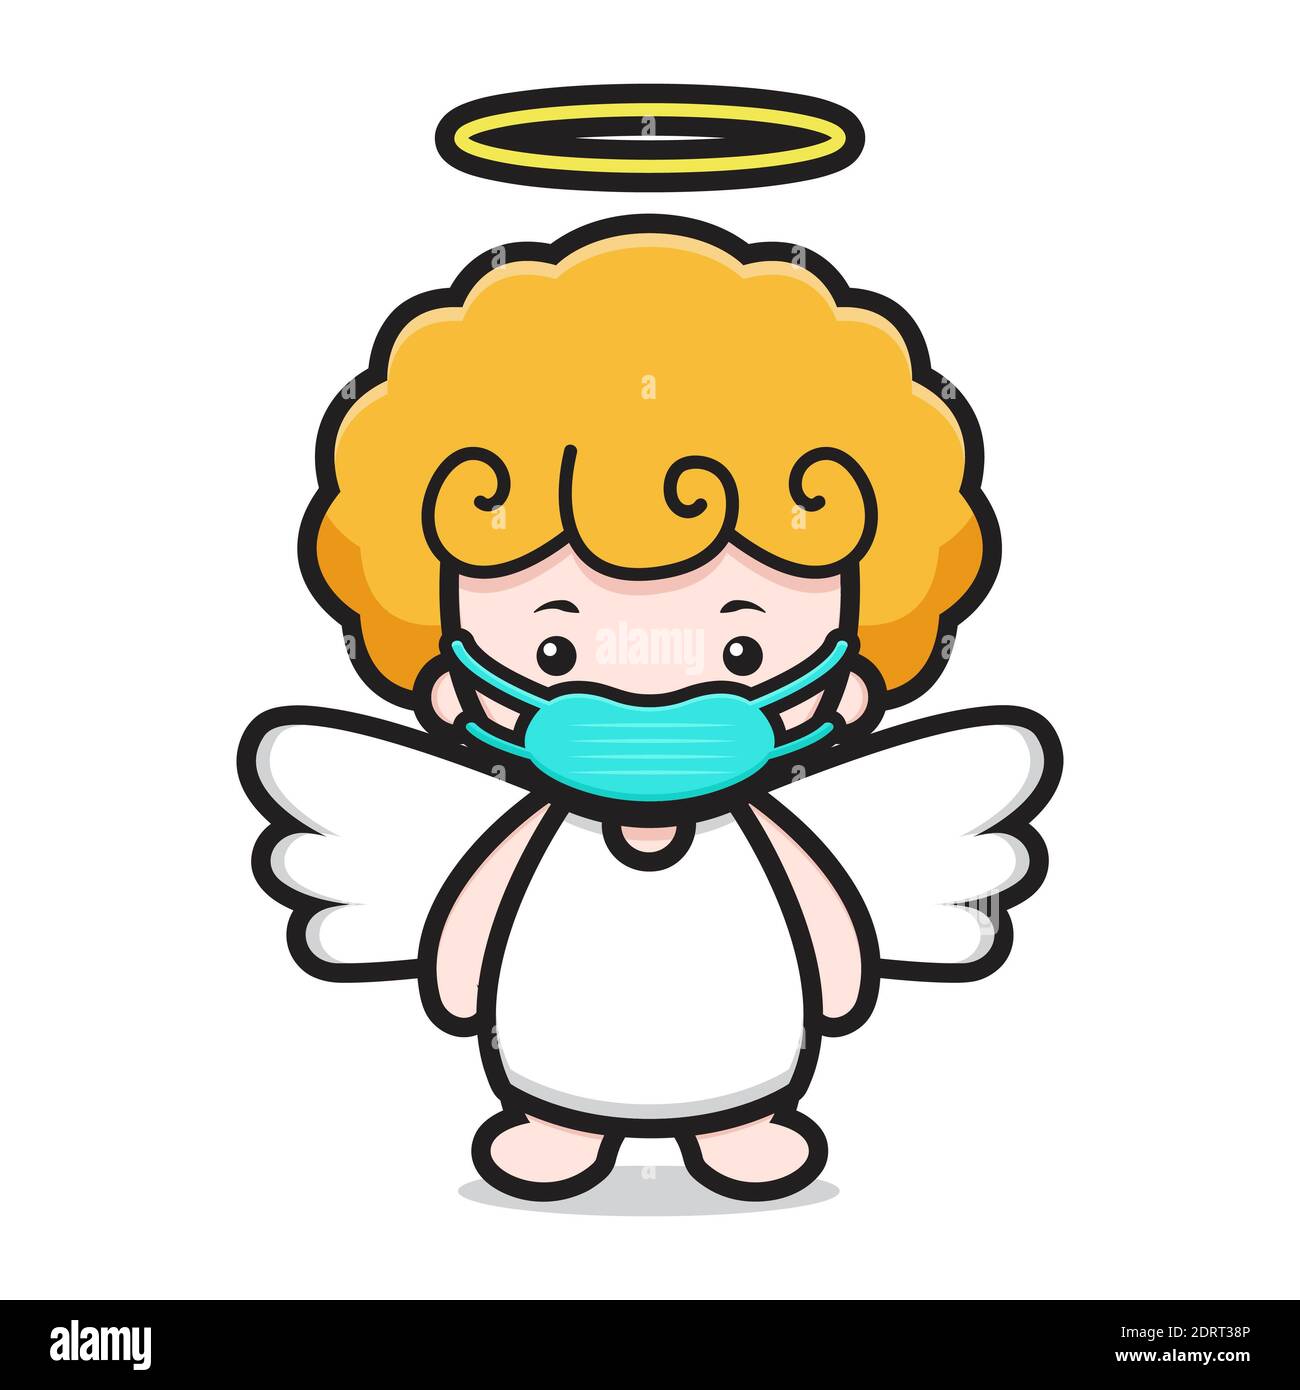 joli personnage de dessin animé ange portant un masque Banque D'Images